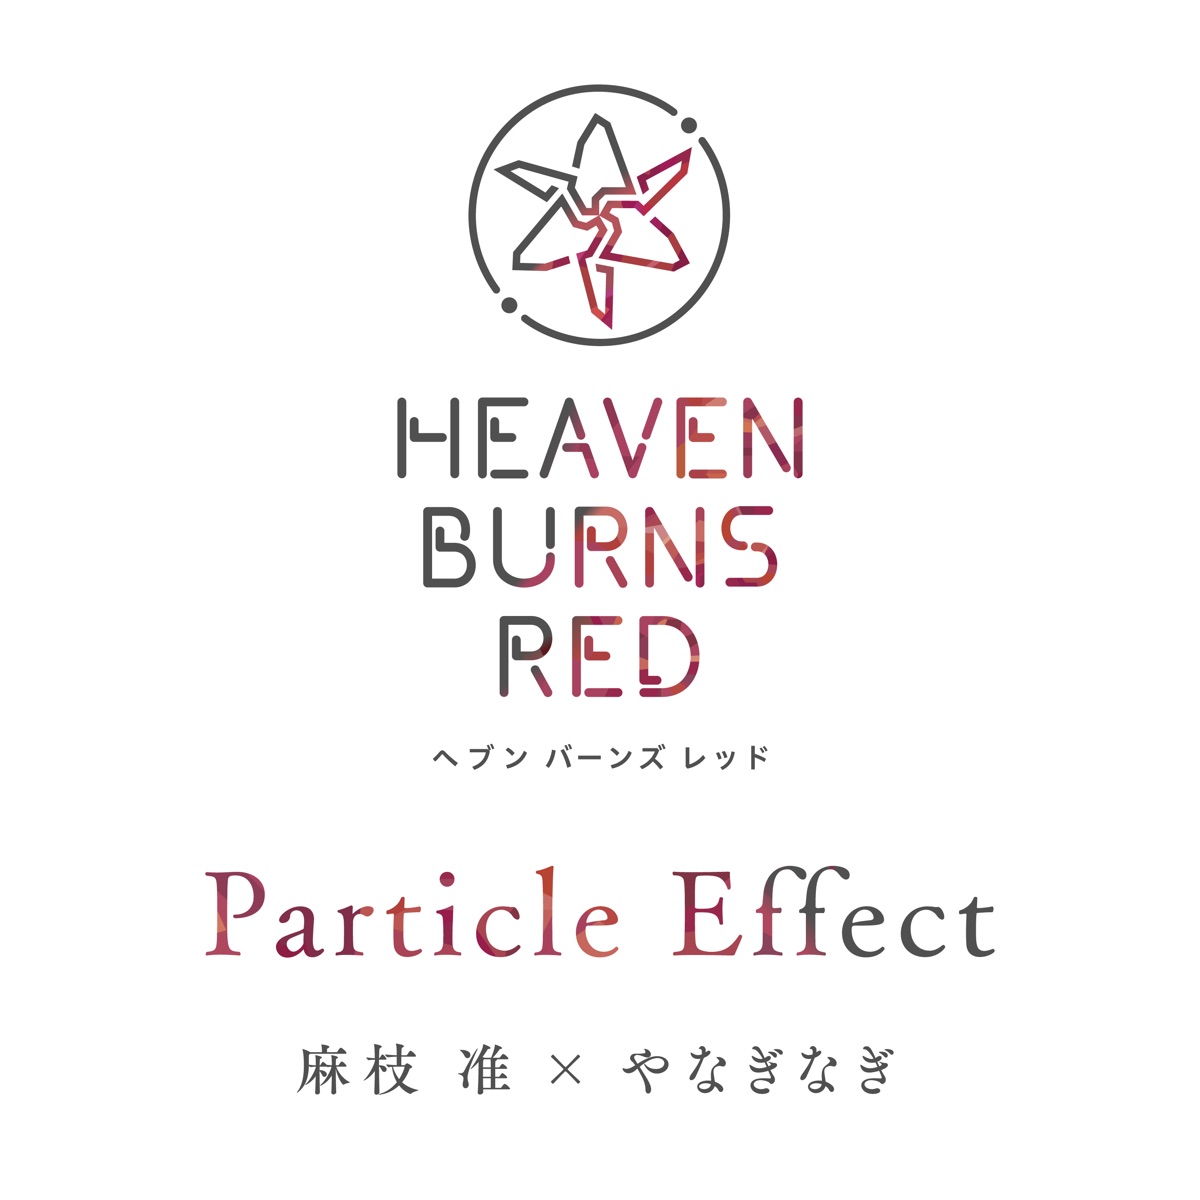 『麻枝准×やなぎなぎ - Particle Effect』収録の『Particle Effect』ジャケット